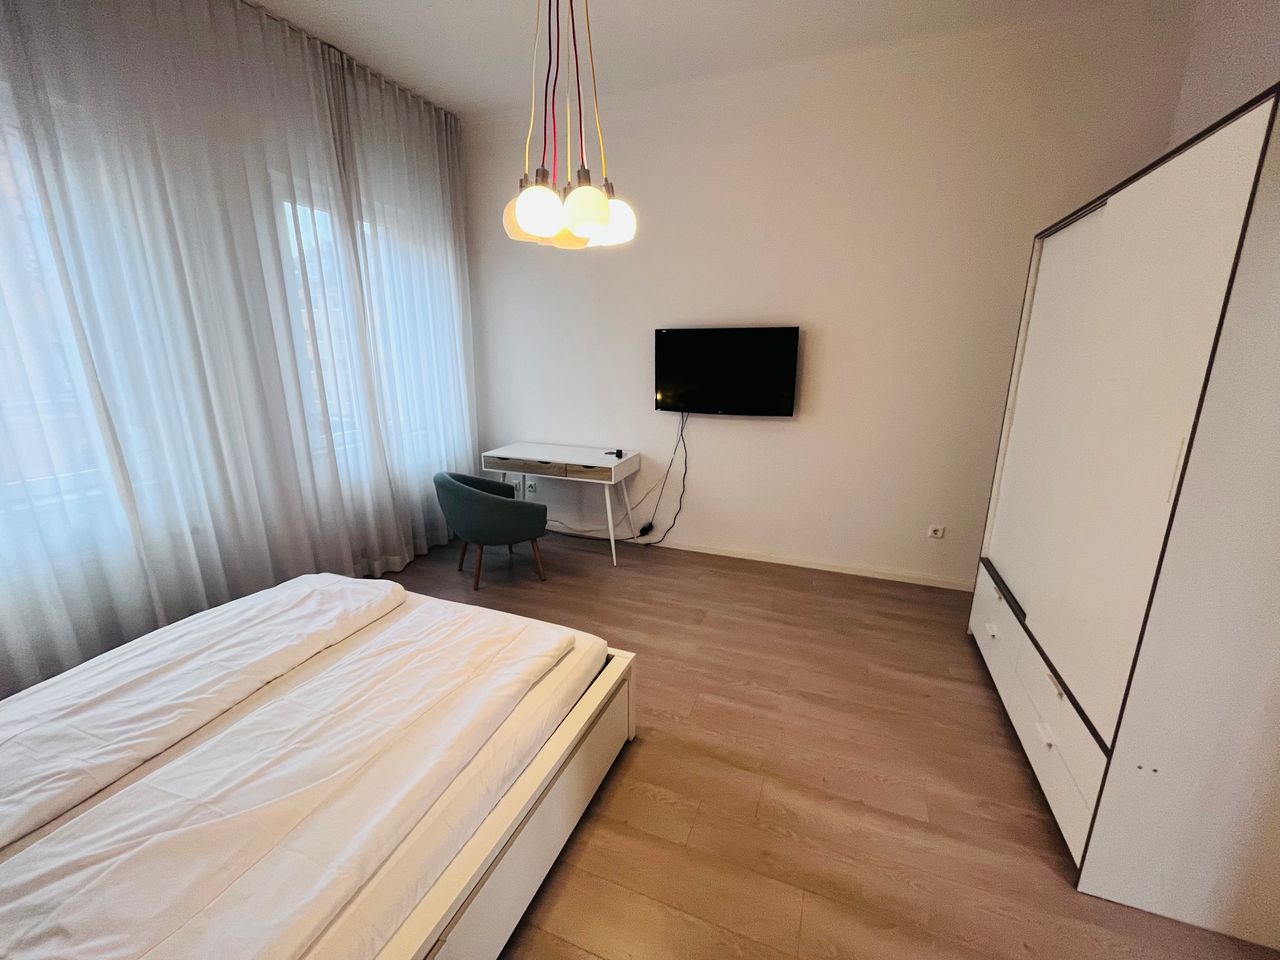 Wonderful & new suite in Erlangen